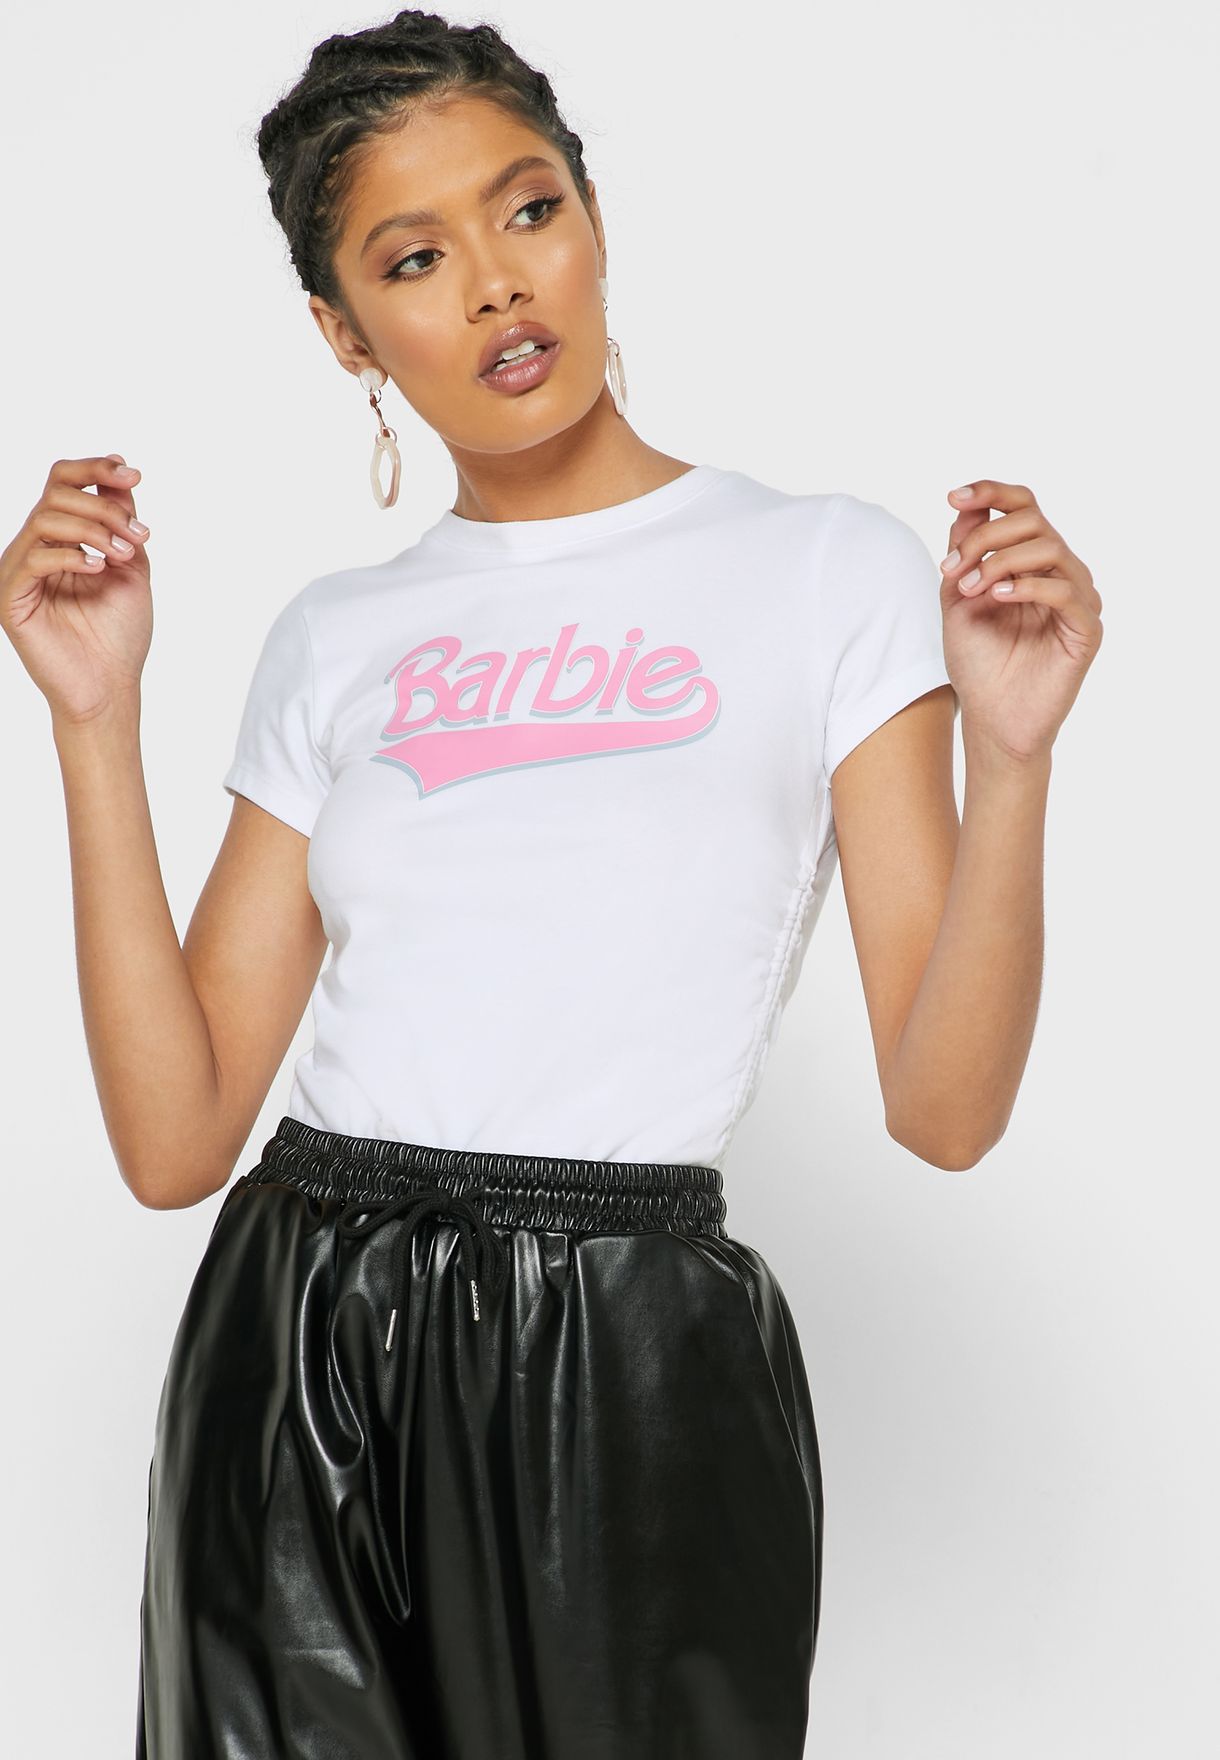 barbie shirt forever 21